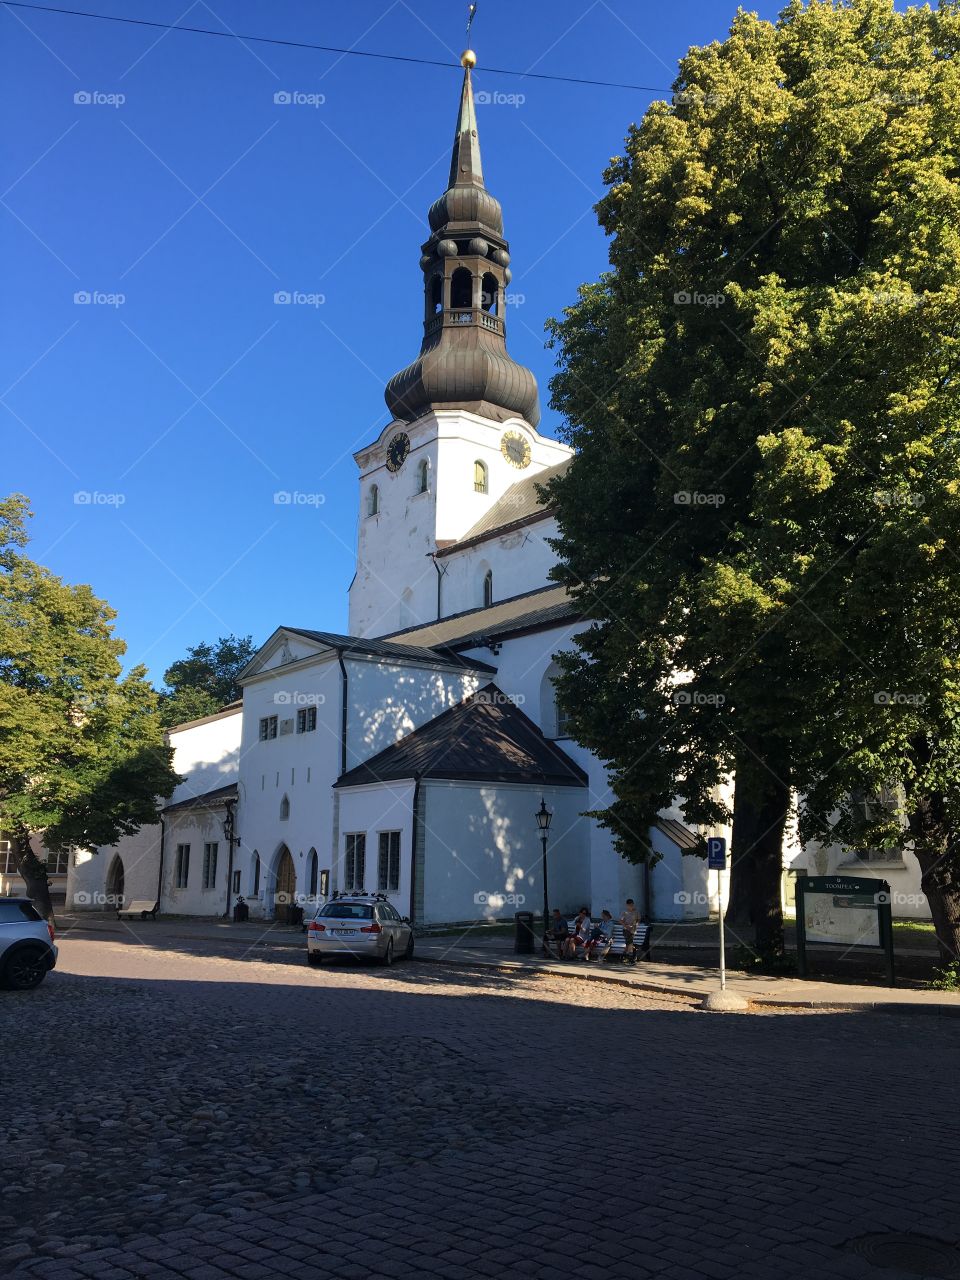 Tallinn church old town 